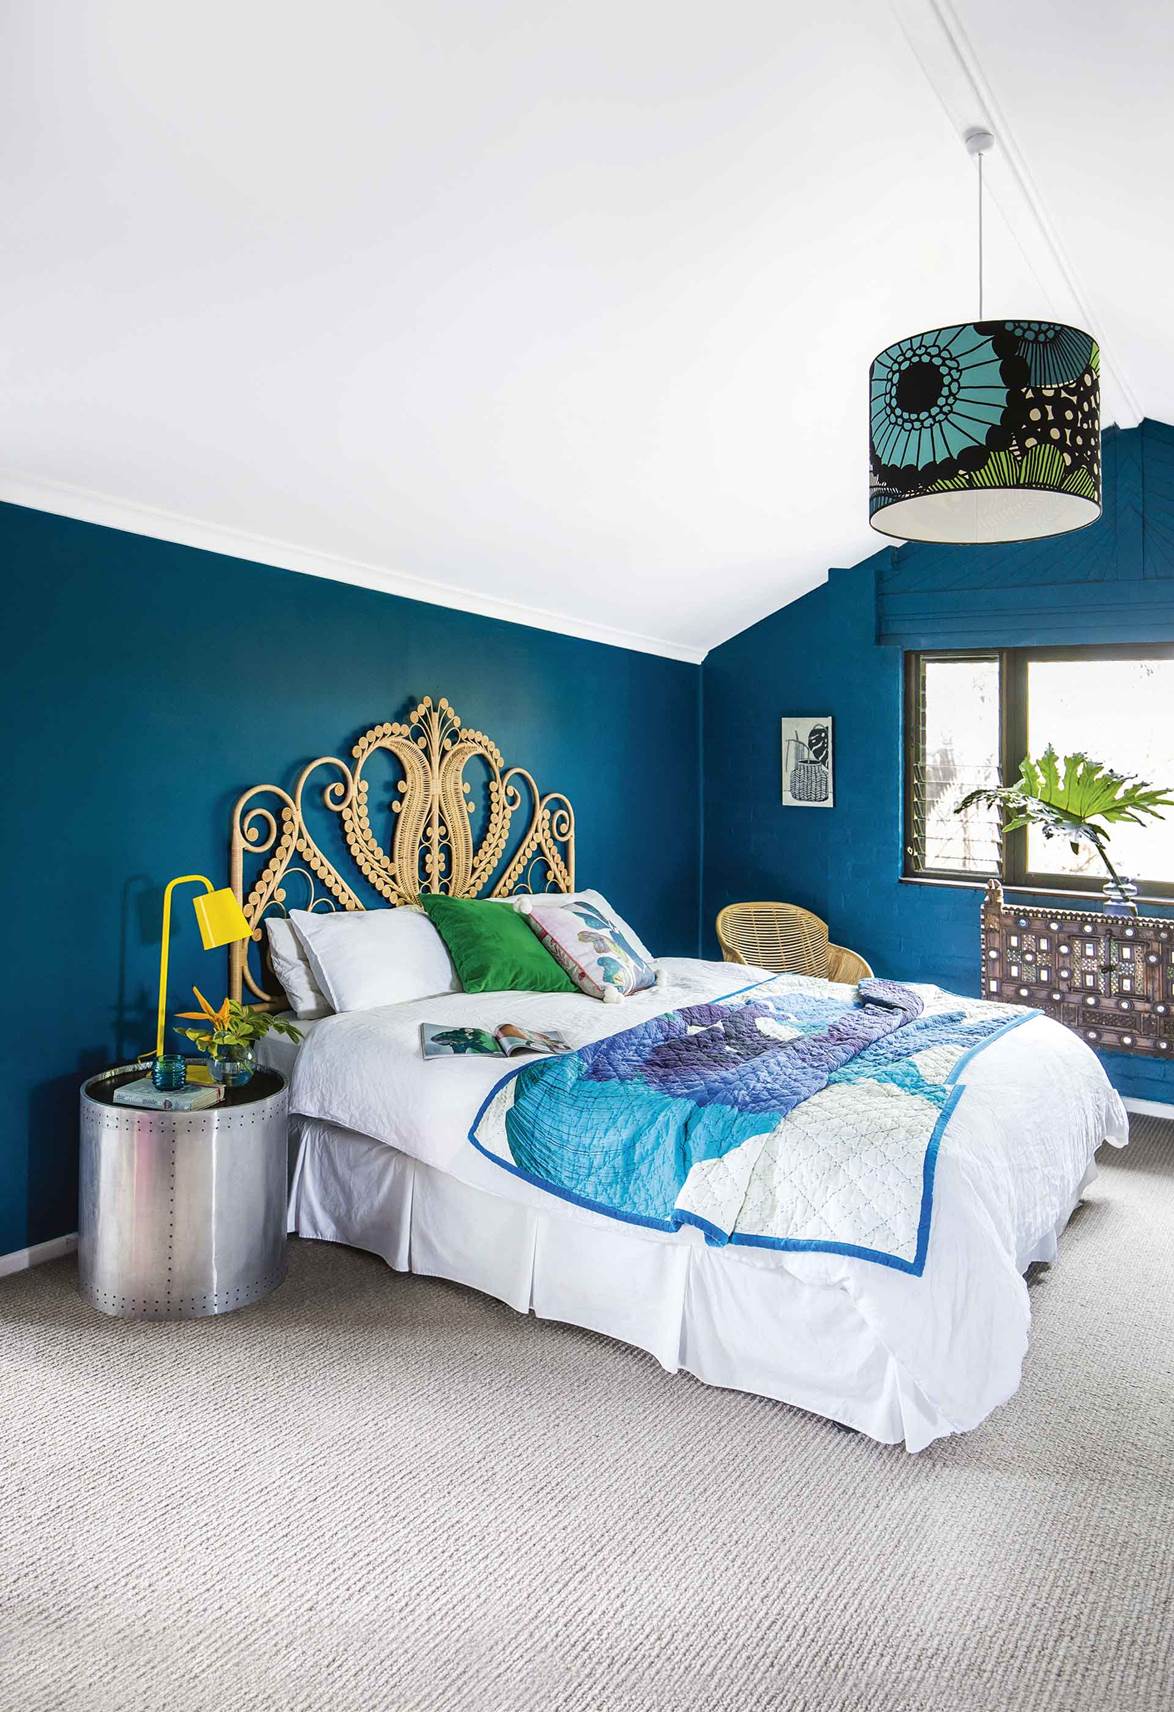 Nội thất phòng ngủ theo hướng tối giản nhưng vẫn nổi bật về màu sắc